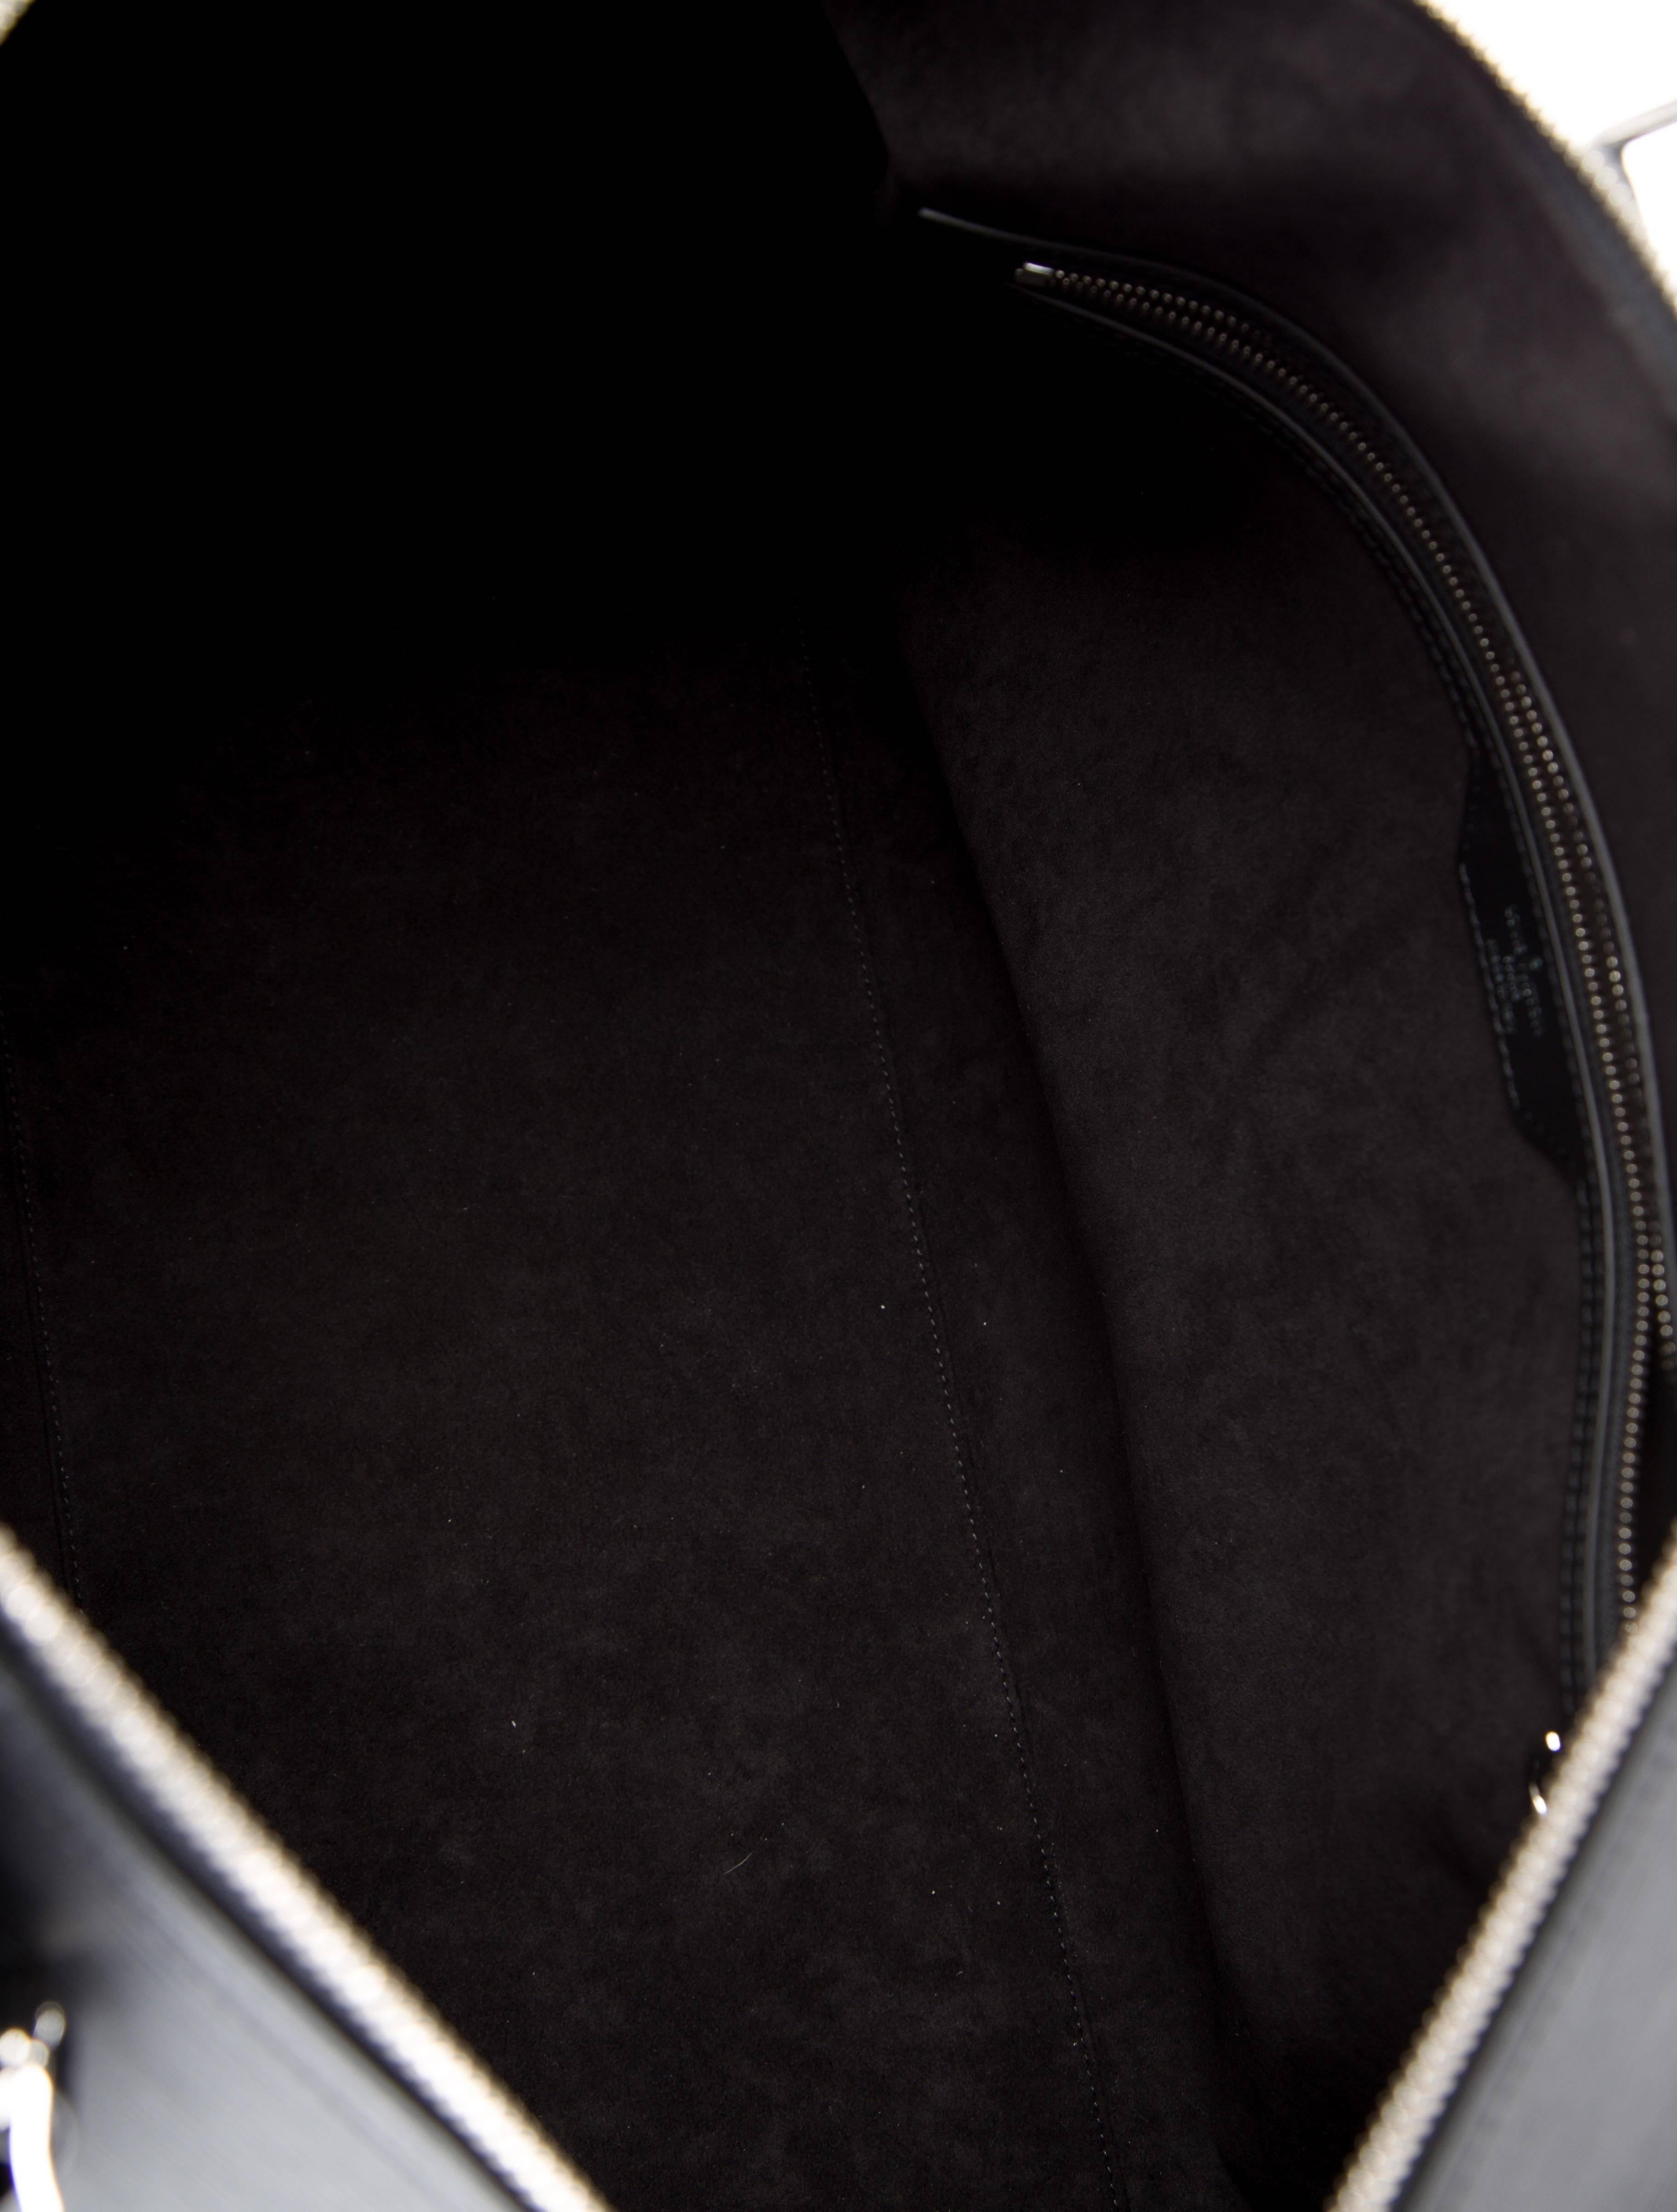  Louis Vuitton Supreme NEW Black Leather Men's Travel Duffle Carryall Bag in Box (sac de voyage en cuir noir) Pour hommes 